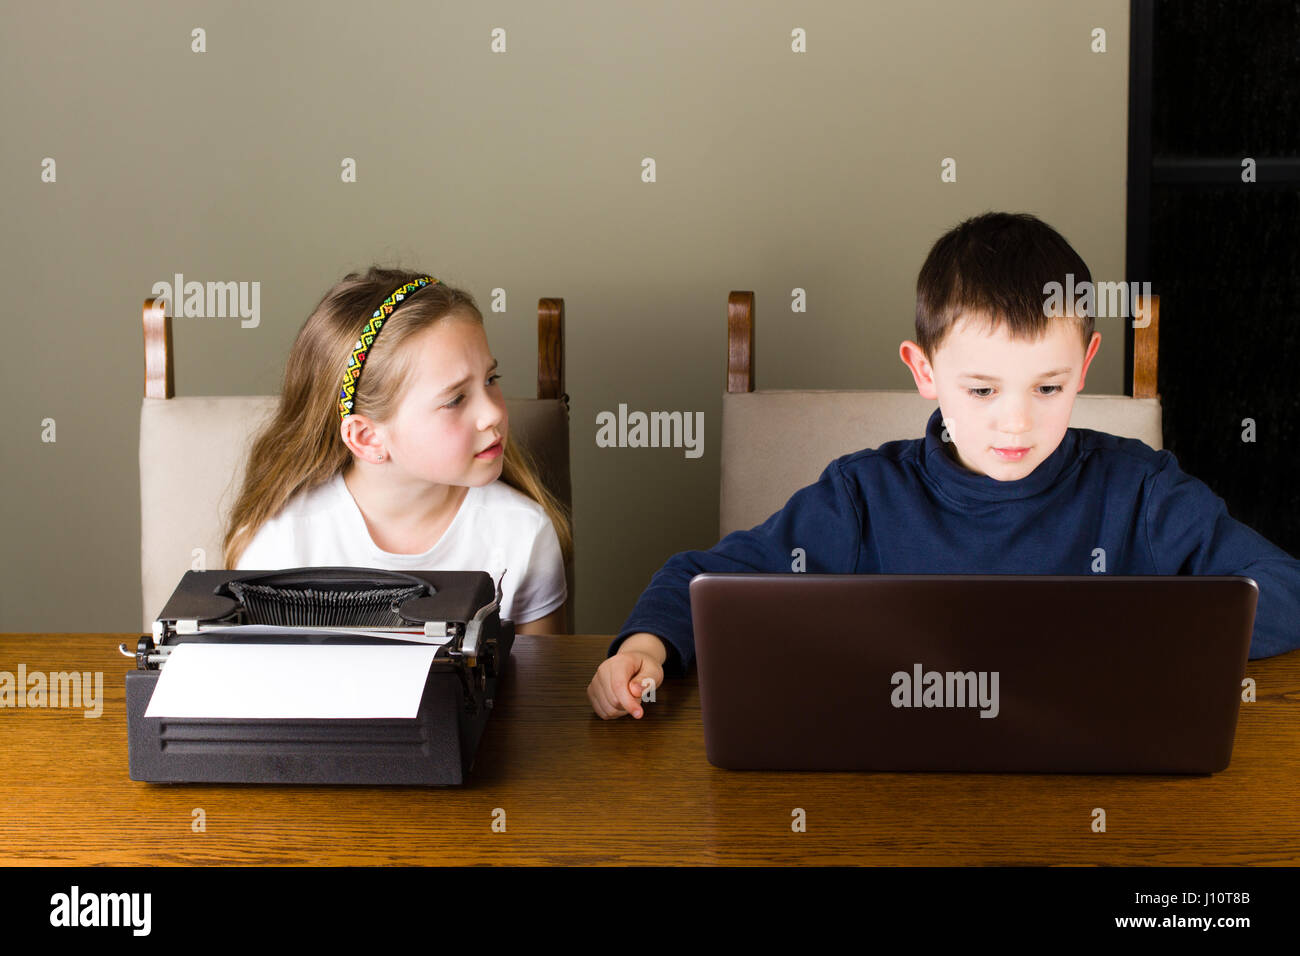 Mädchen eifersüchtig hat sie an einer alten Schreibmaschine zu arbeiten, während ihr Bruder auf einem modernen Laptop arbeitet Stockfoto